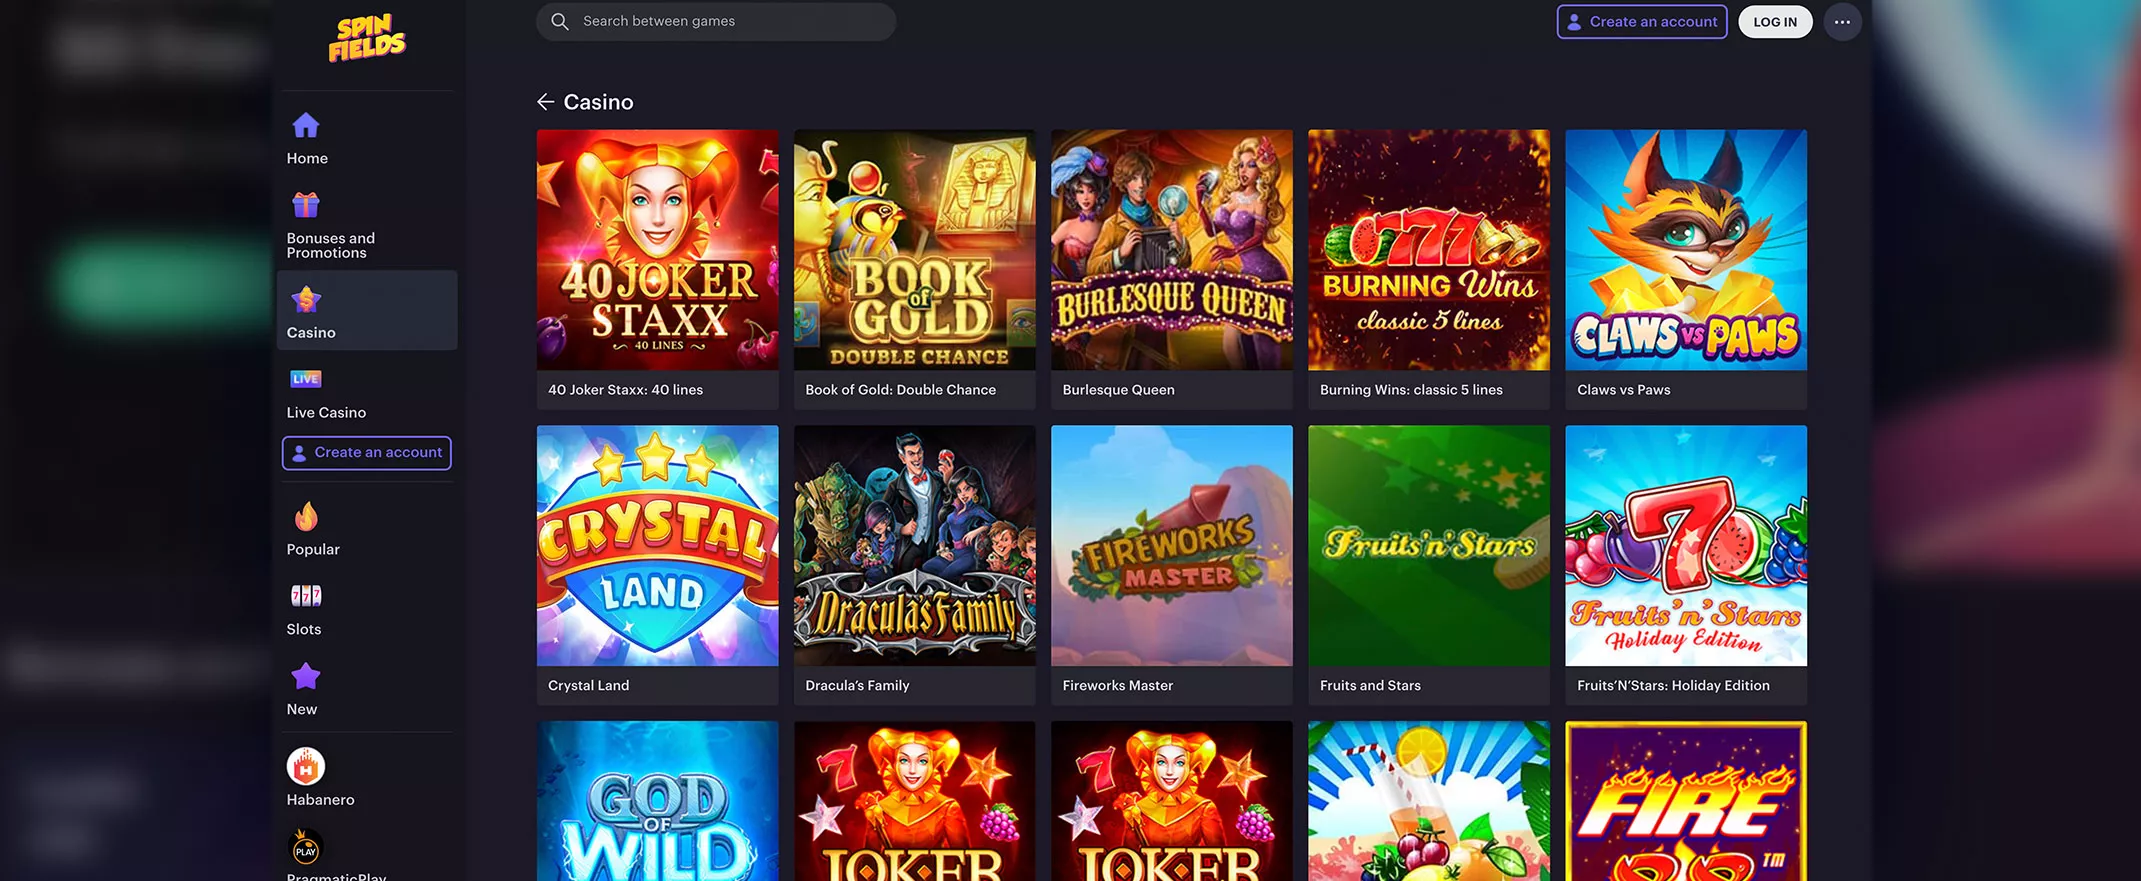 Spinfields Casino Review games screenshot